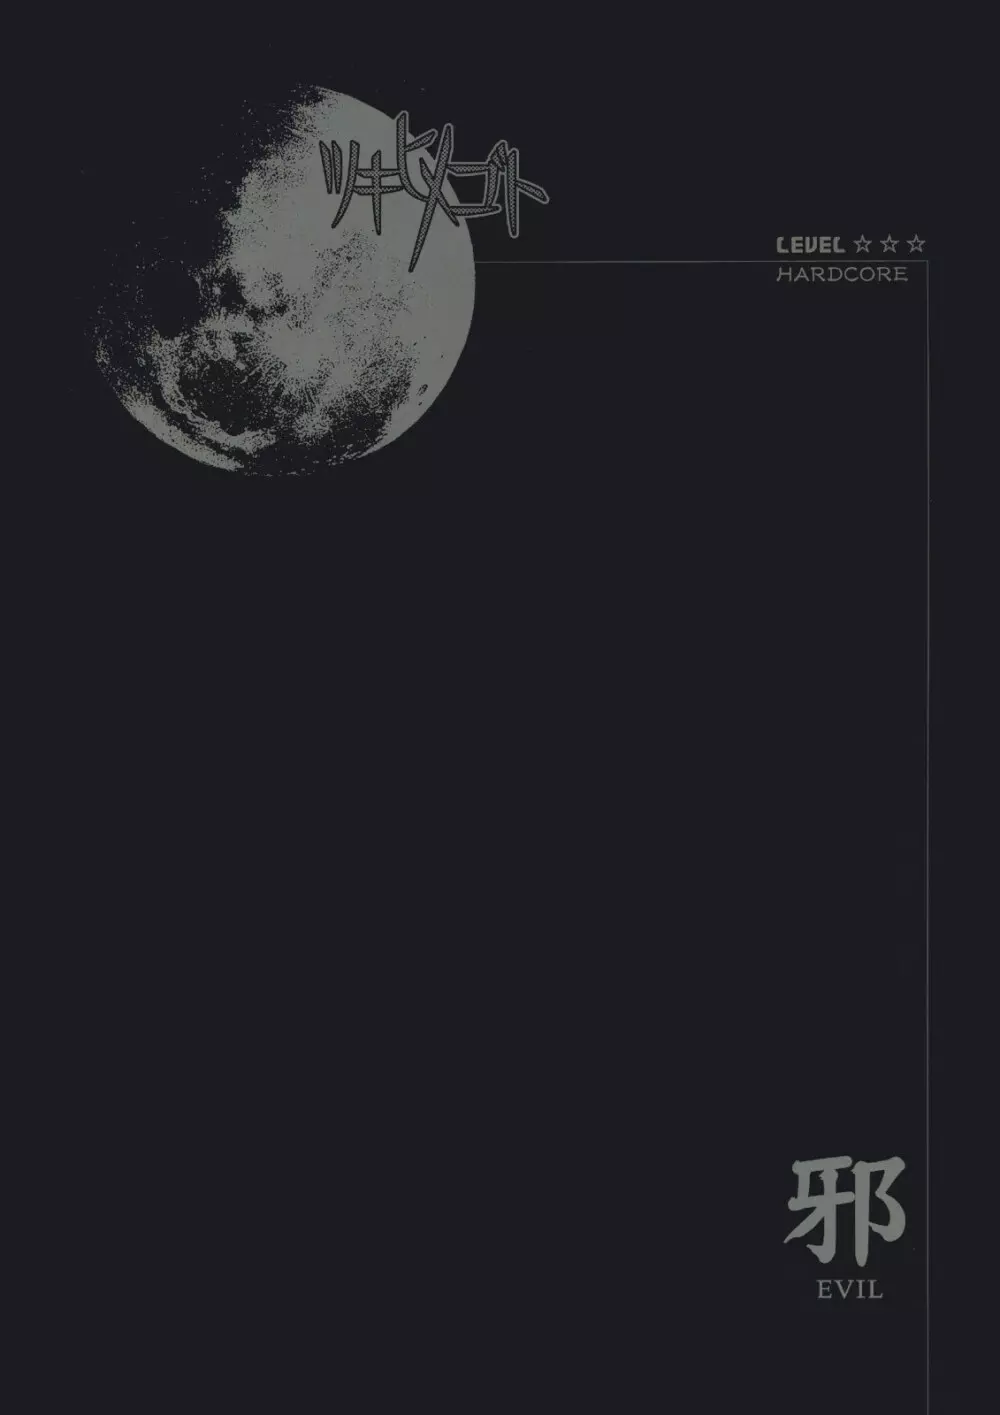 Moon Ecstasy ツキヒメゴト邪 LEVEL ☆☆☆ HARDCORE - page1